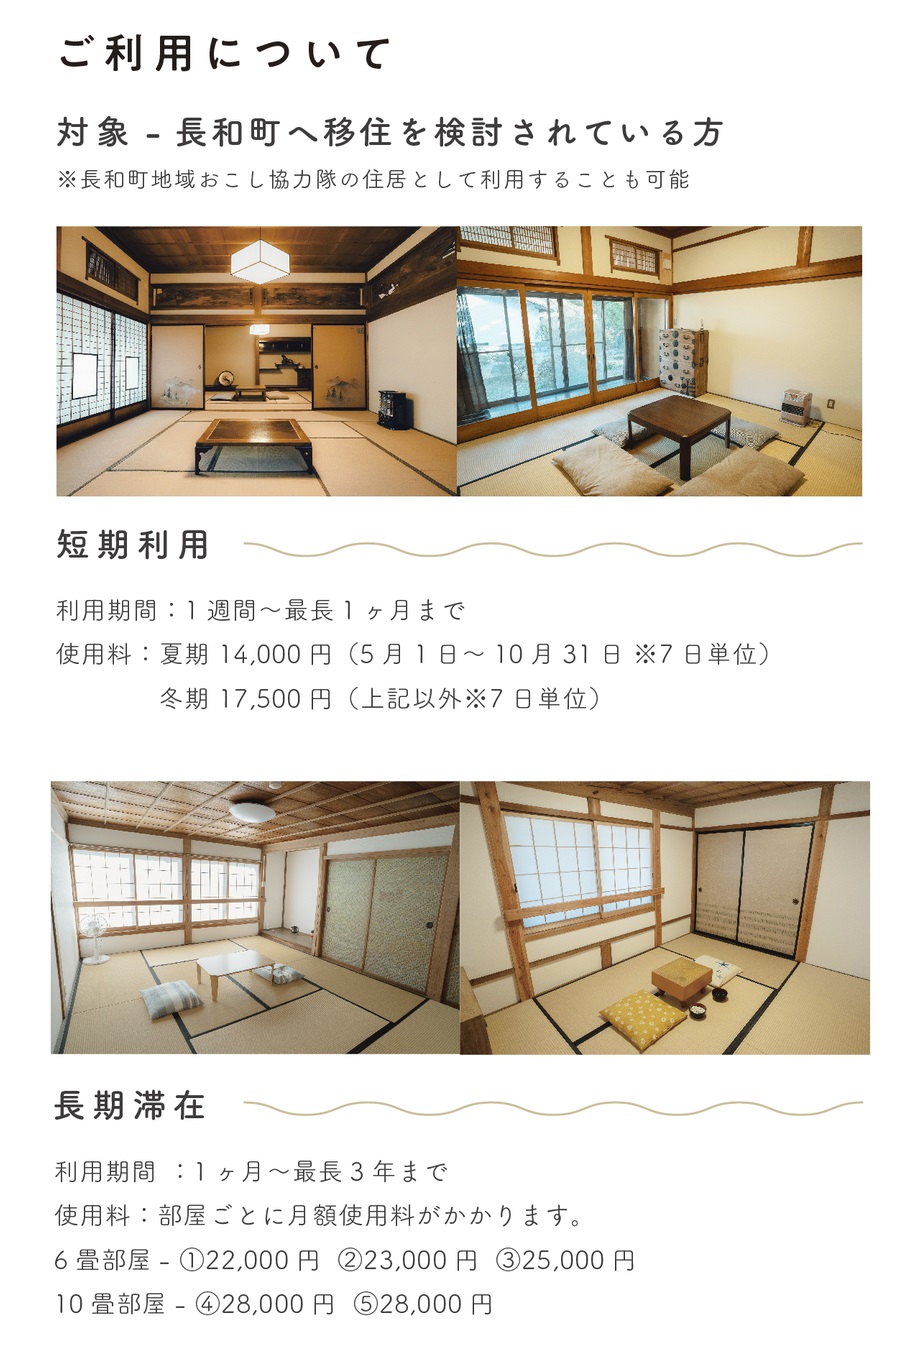 長和町シェア型移住体験施設NAUについて、紹介文章や室内や館内図などが記載された画像3